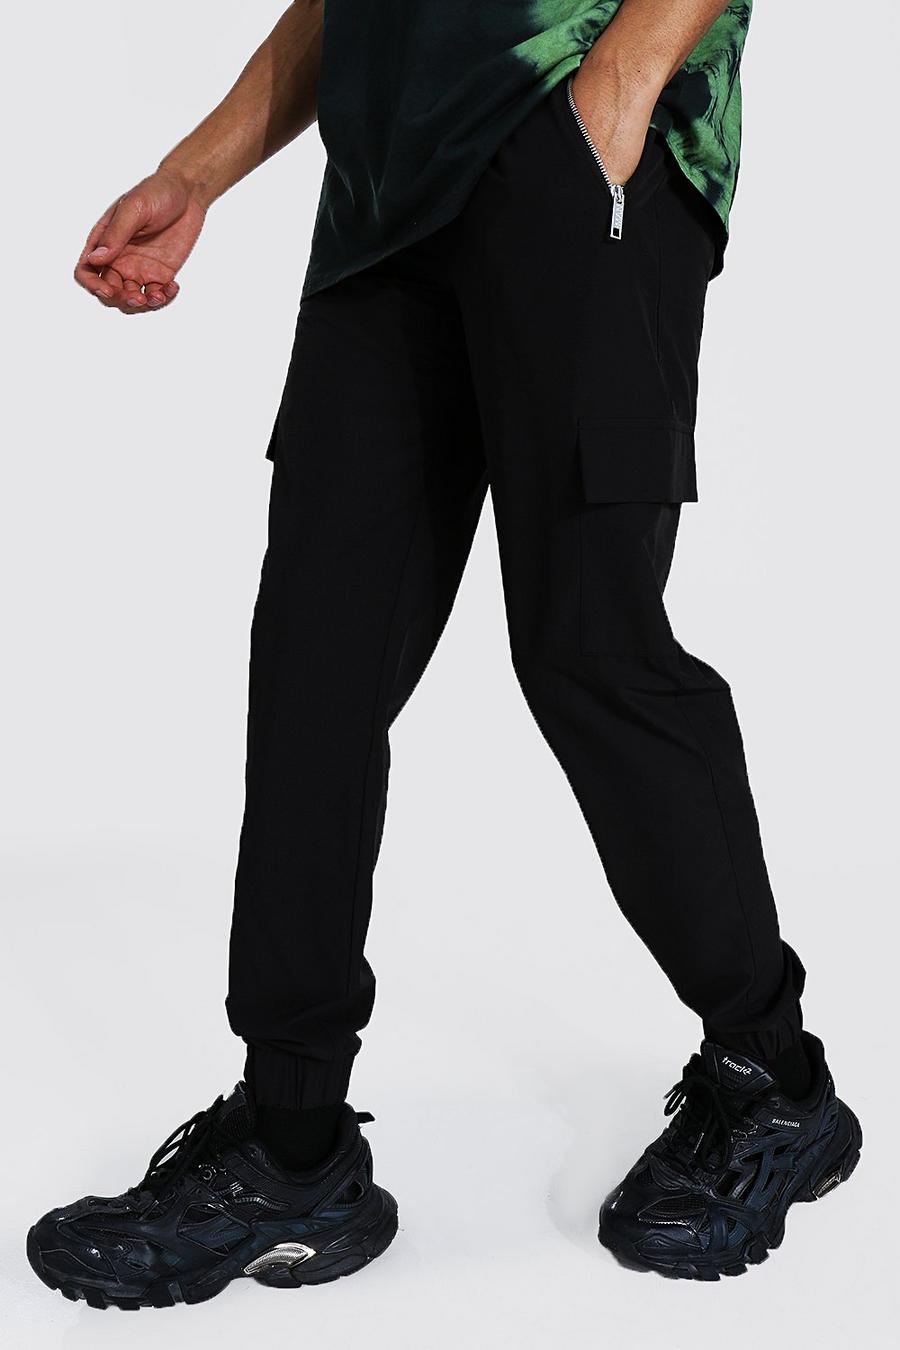 שחור מכנסי ריצה דגמ"ח מבד עמיד עם כיסים עם רוכסן לגברים גבוהים image number 1